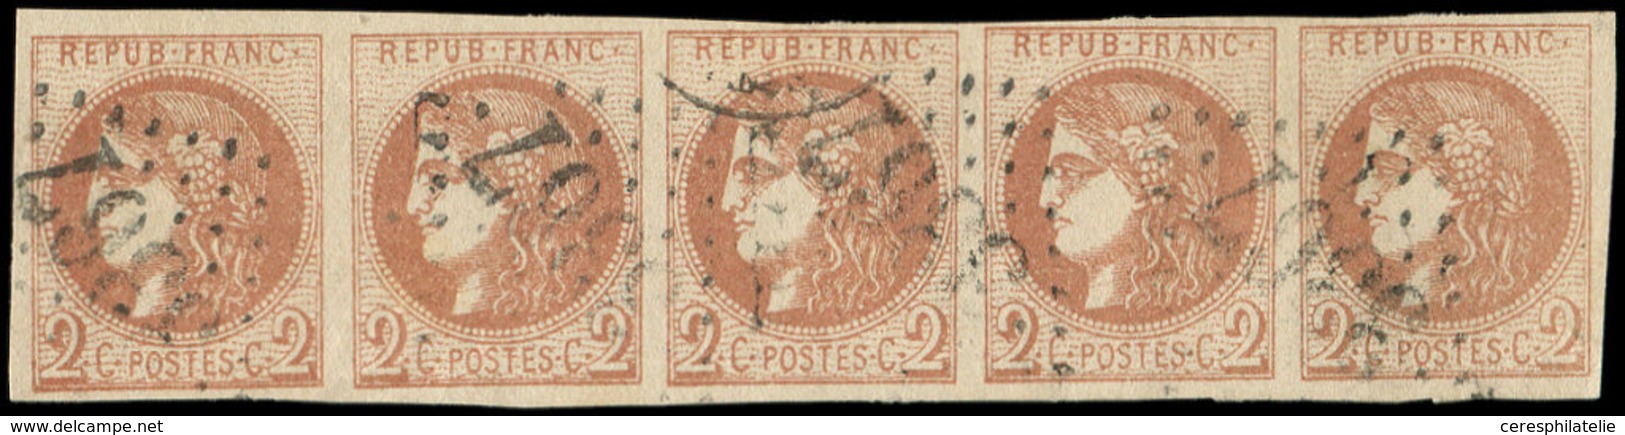 EMISSION DE BORDEAUX - 40B   2c. Brun-rouge, R II, BANDE De 5 Obl. GC 3367, Pos. 11 à 15, TTB - 1870 Emissione Di Bordeaux